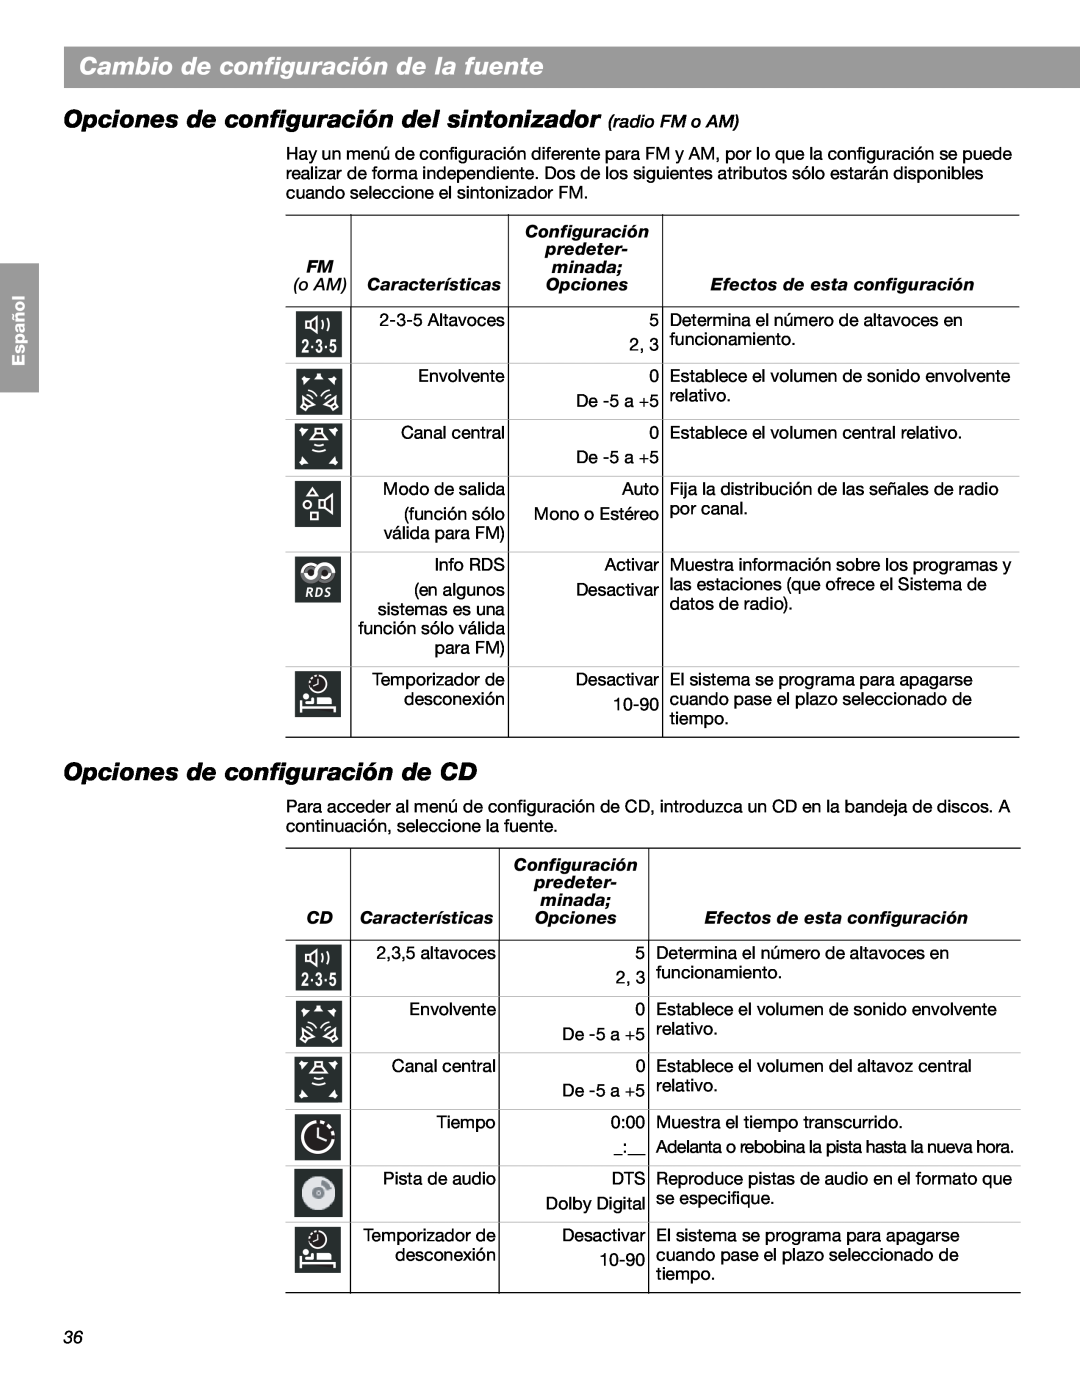 Bose LIFESTYLE 48 Opciones de configuración de CD, Cambio de configuración de la fuente, English Español Français, minada 